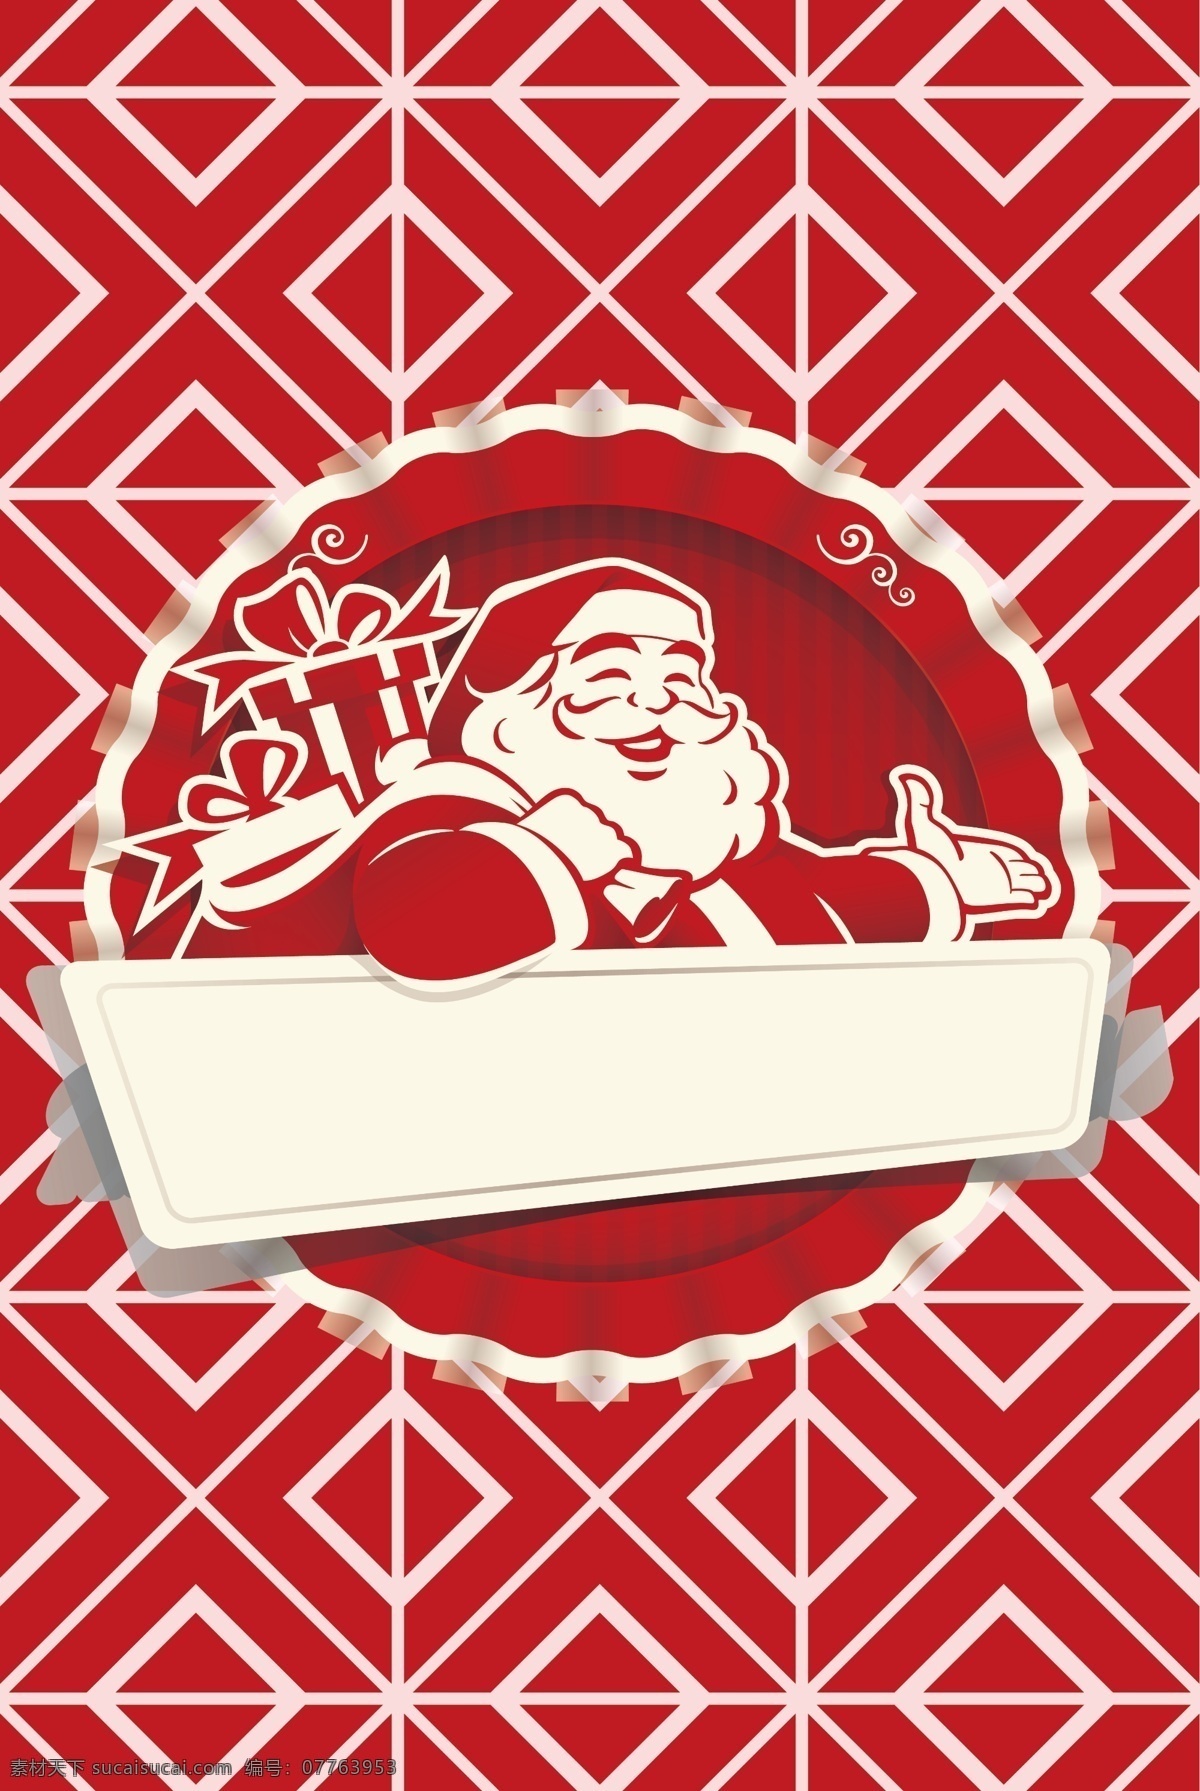 可爱 圣诞老人 背景 图 红色 卡通 圣诞 平安夜 电商 海报 淘宝 天猫 banner 下雪